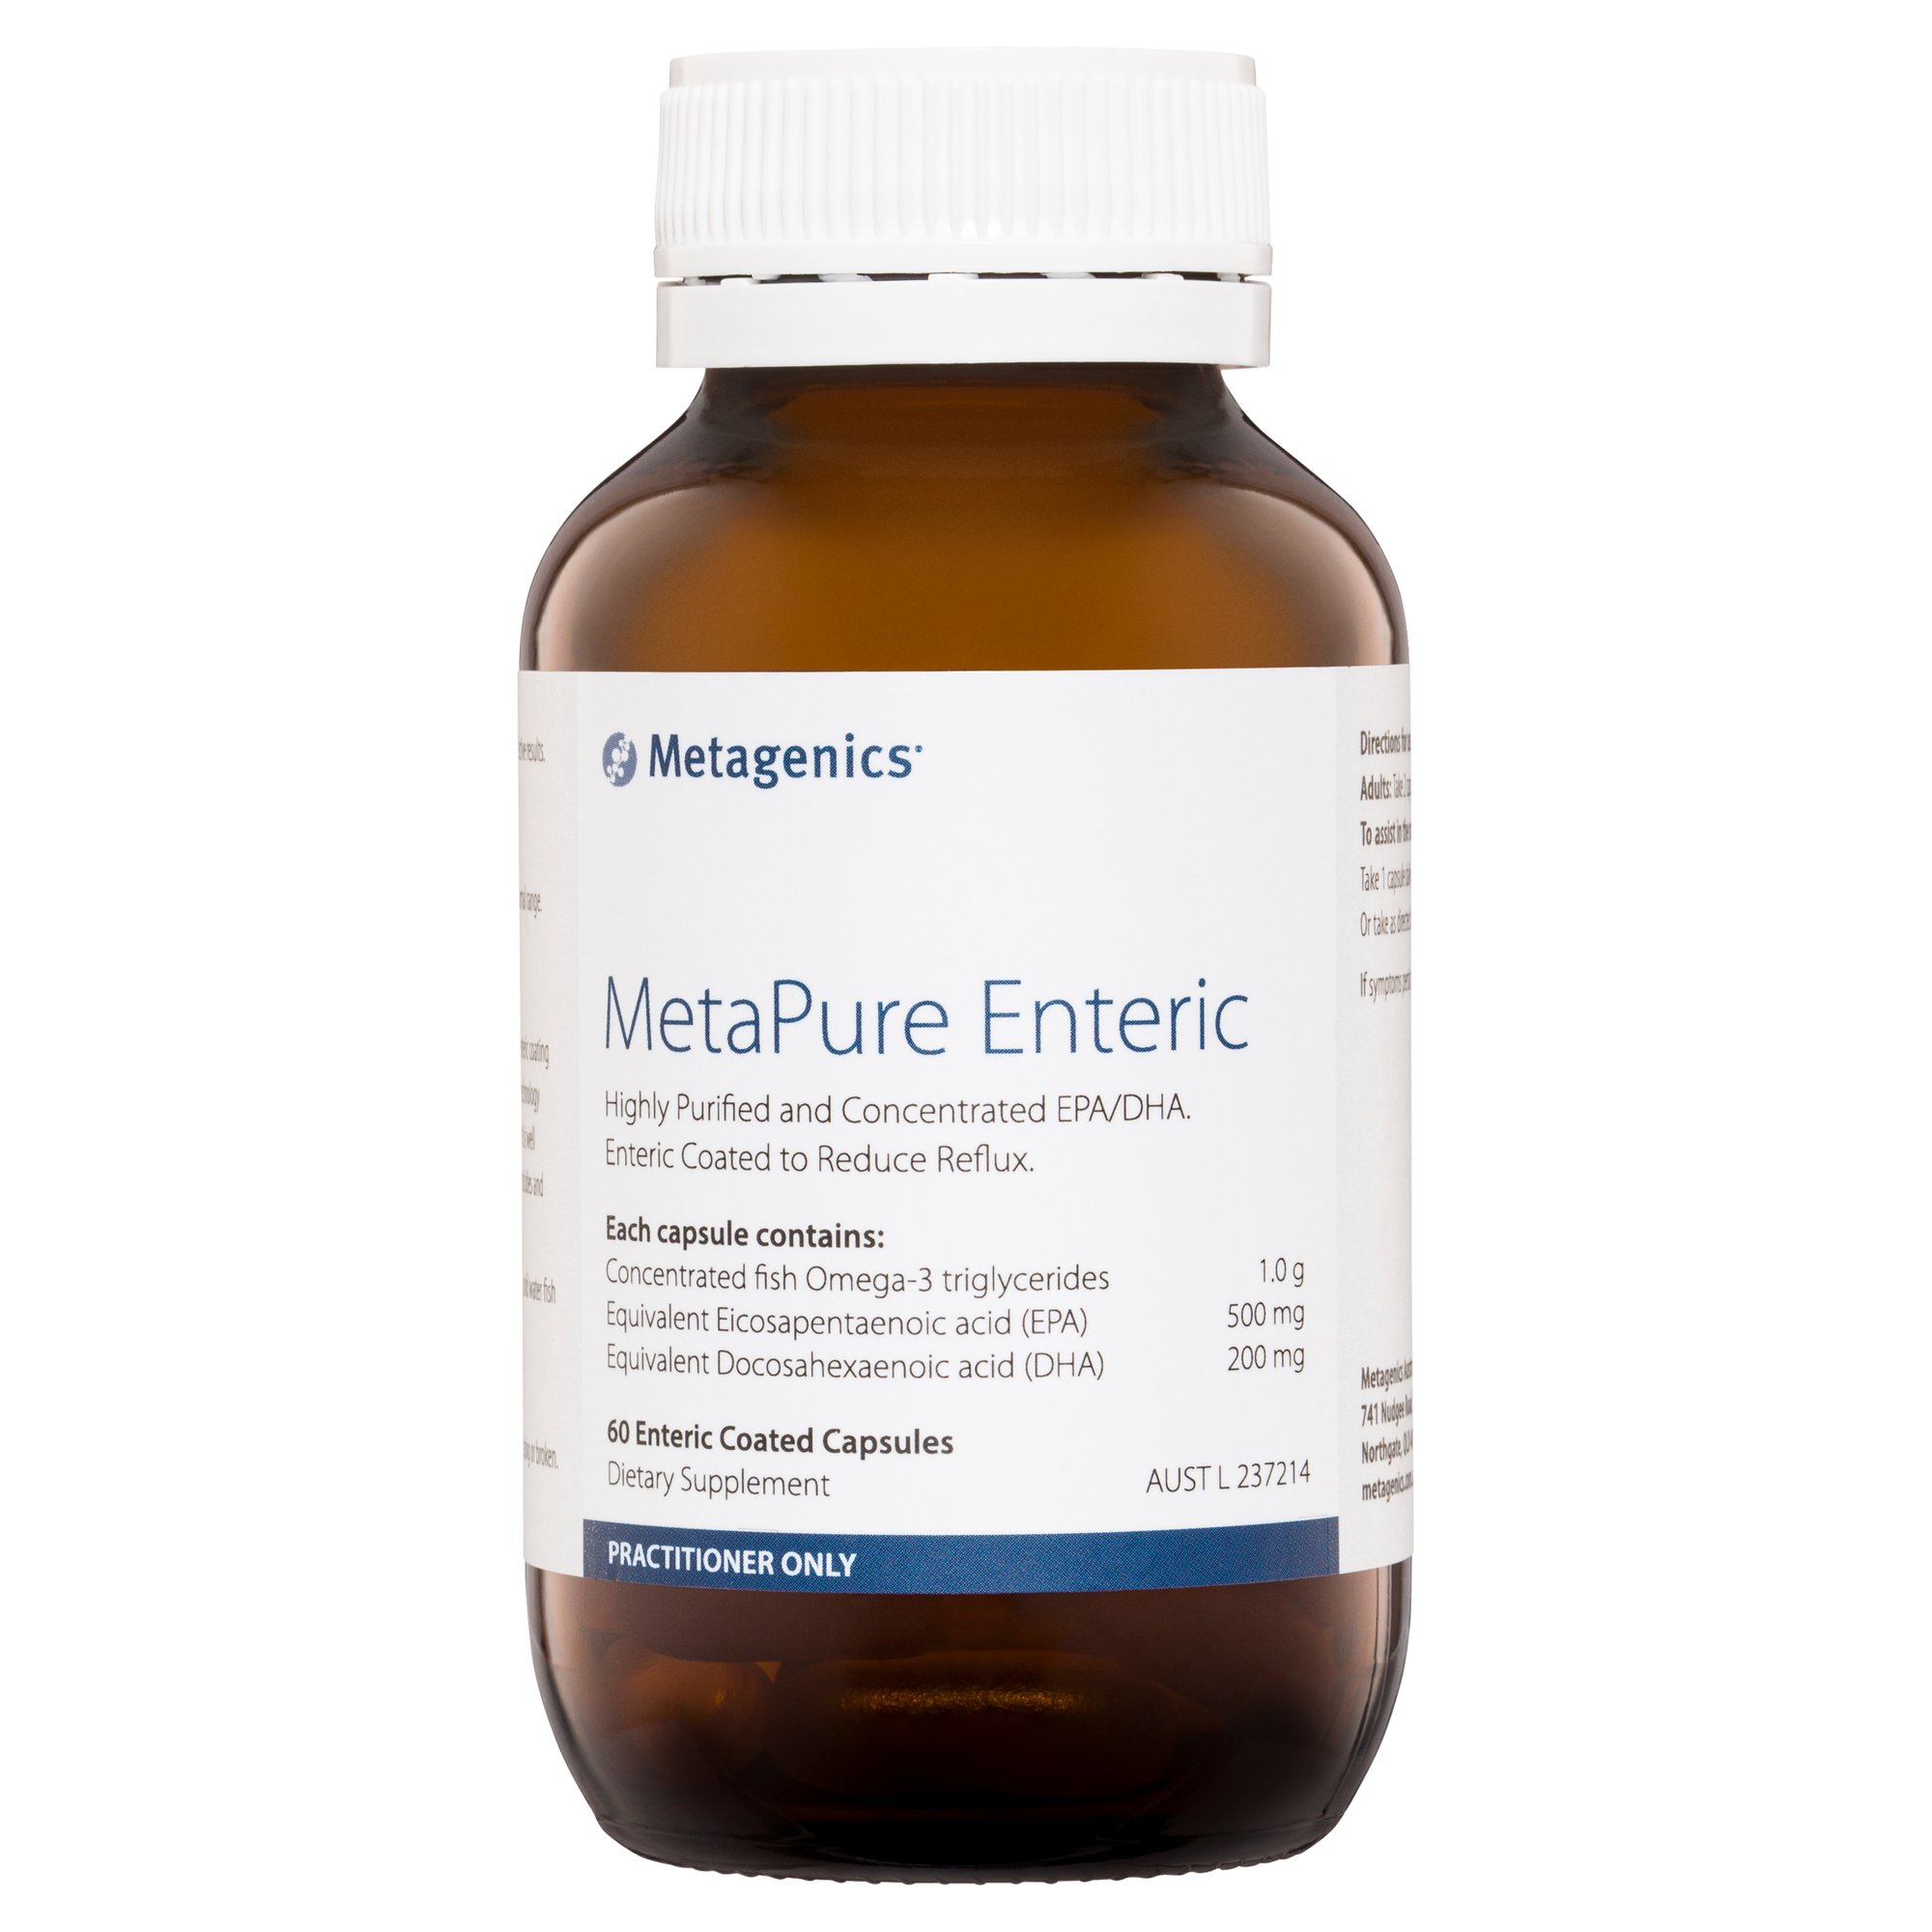 Metagenics MetaPure Enteric Capsules